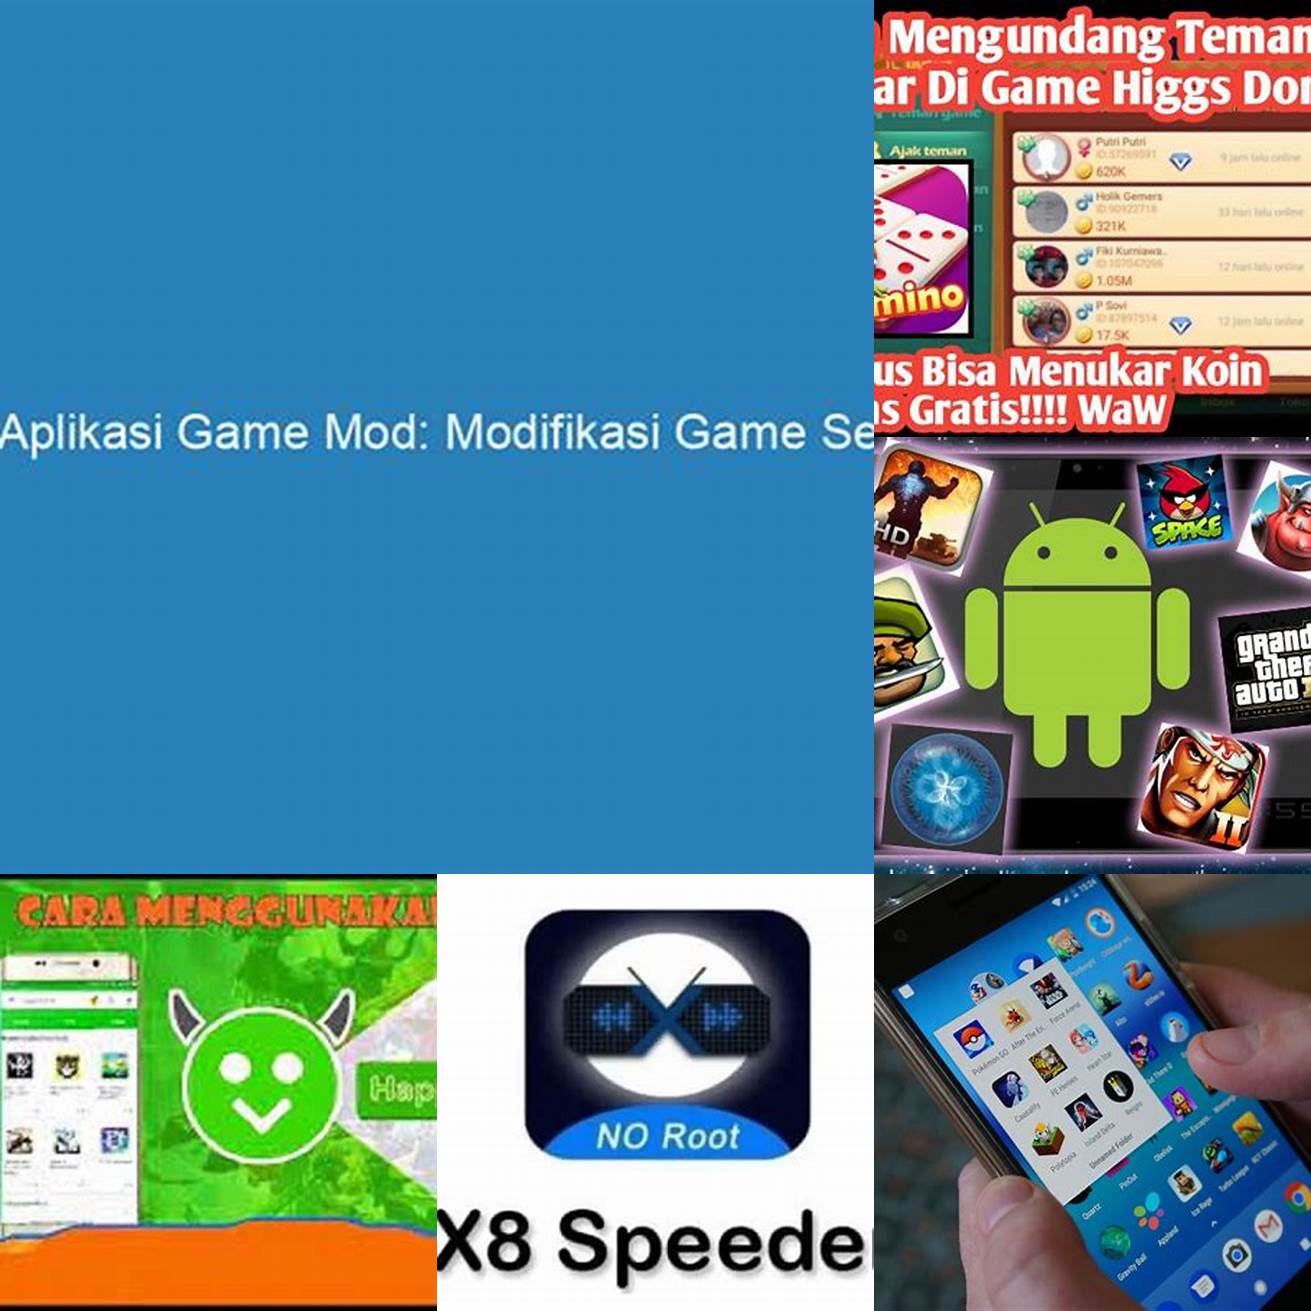 Mod APK memungkinkan Anda untuk memodifikasi game sesuai dengan keinginan Anda